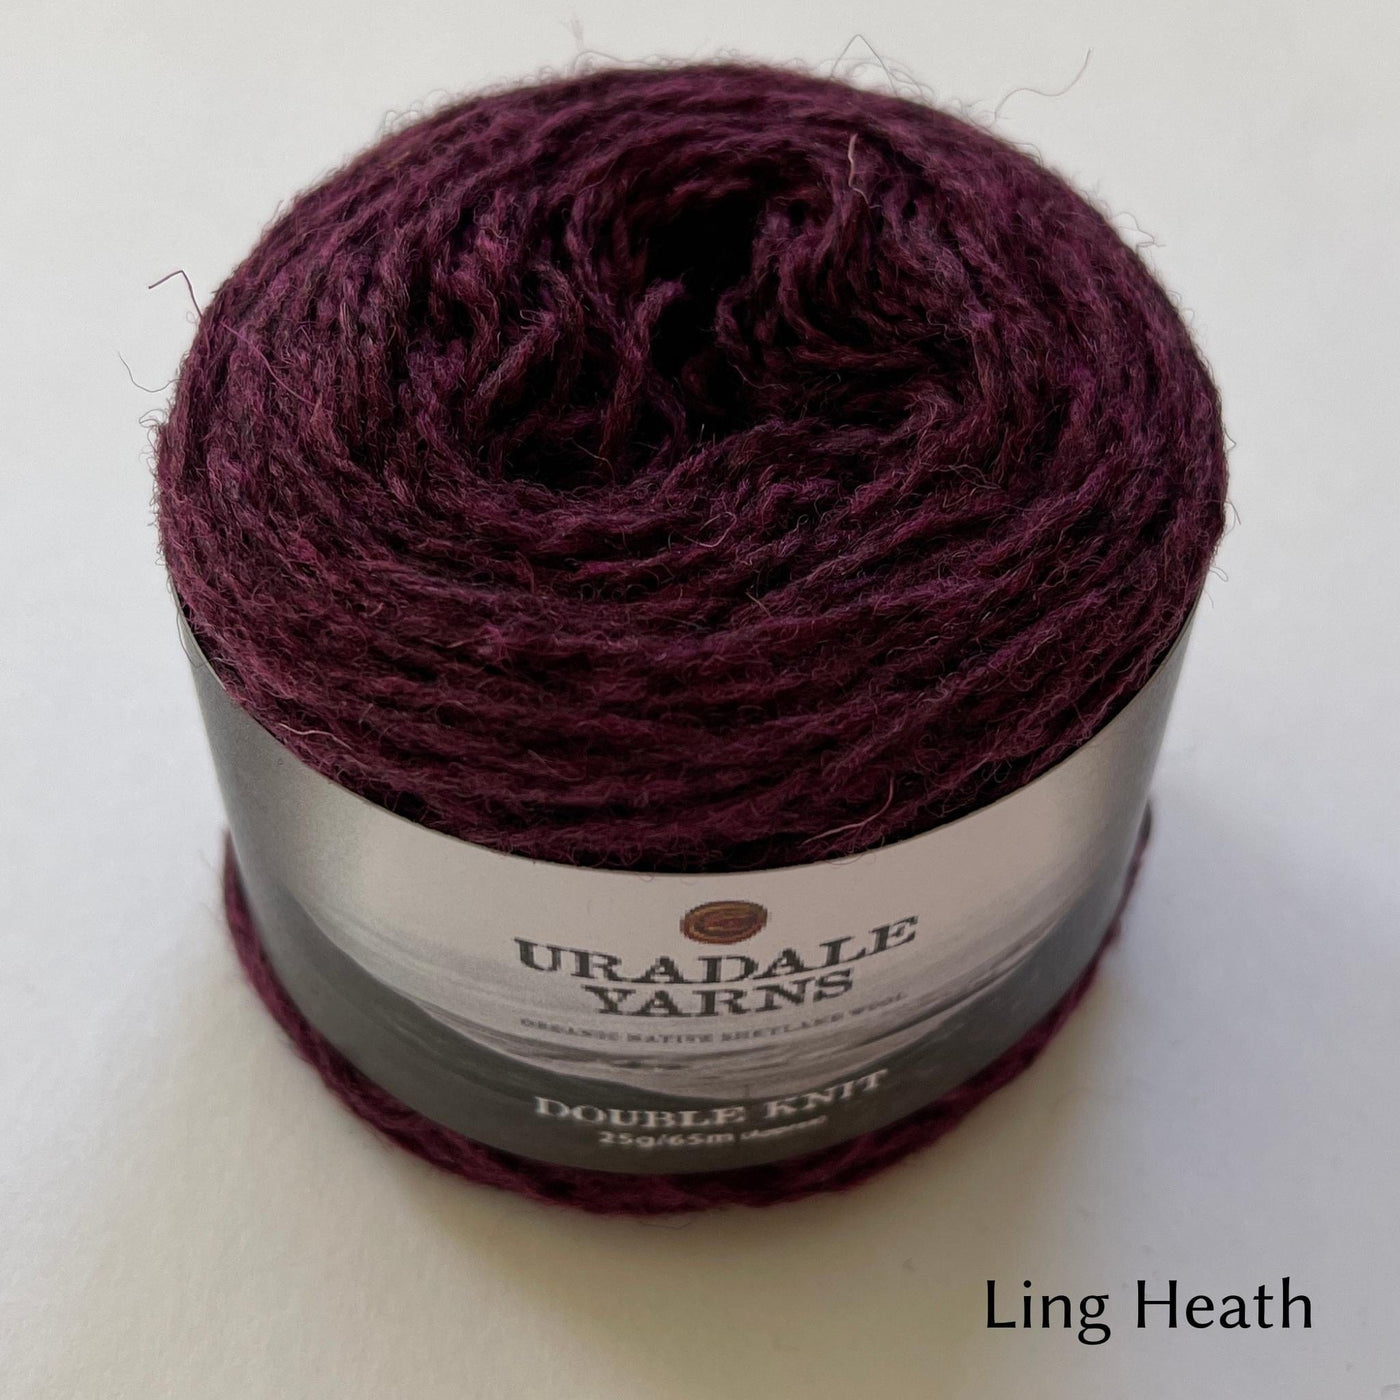 cake of Uradale DK yarn in color Ling Heath- heathered burgundy